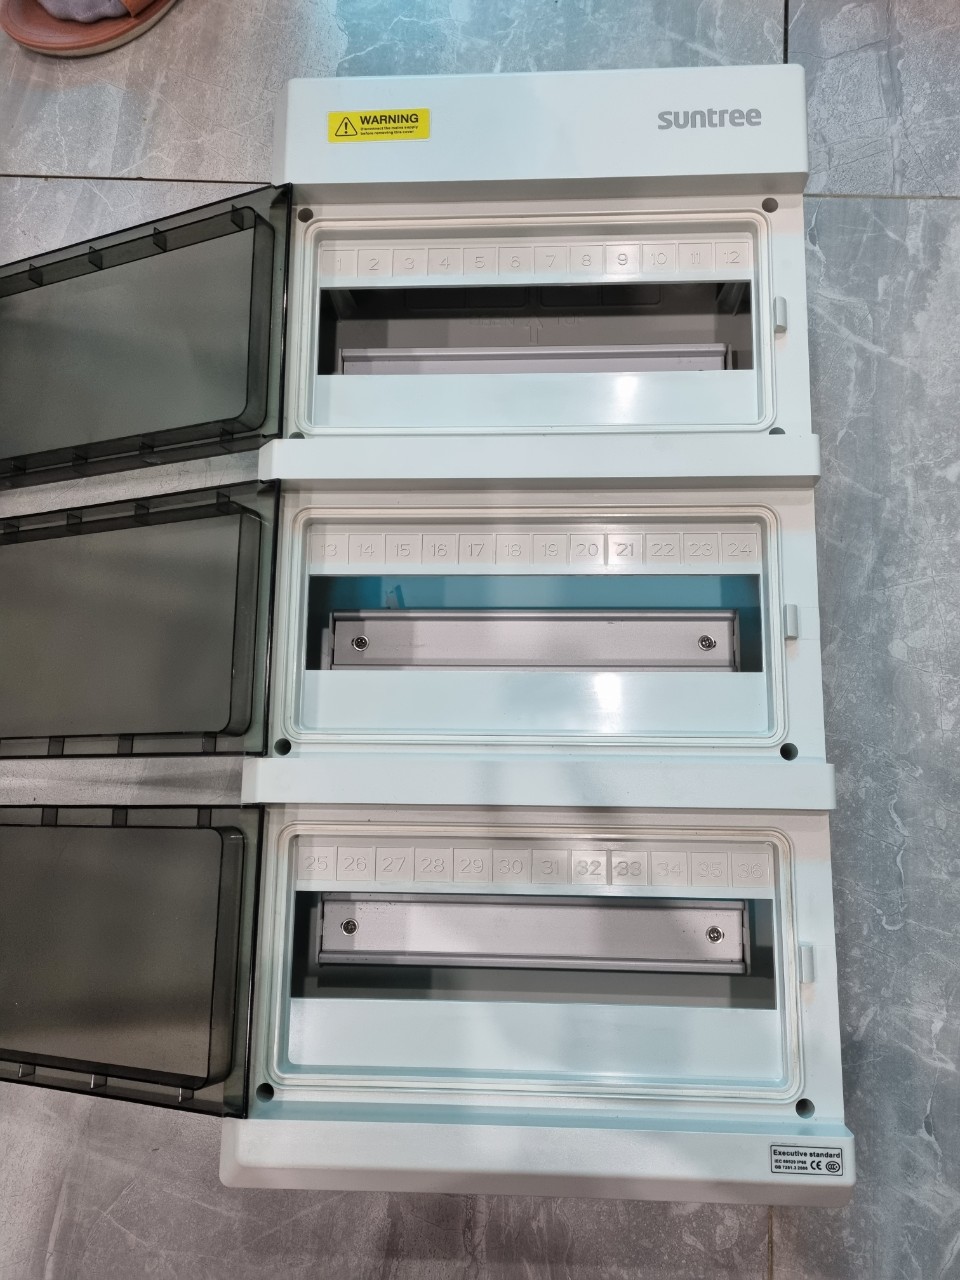 Vỏ tủ điện nhựa suntree 36MCB Sh 36 PN cho solar